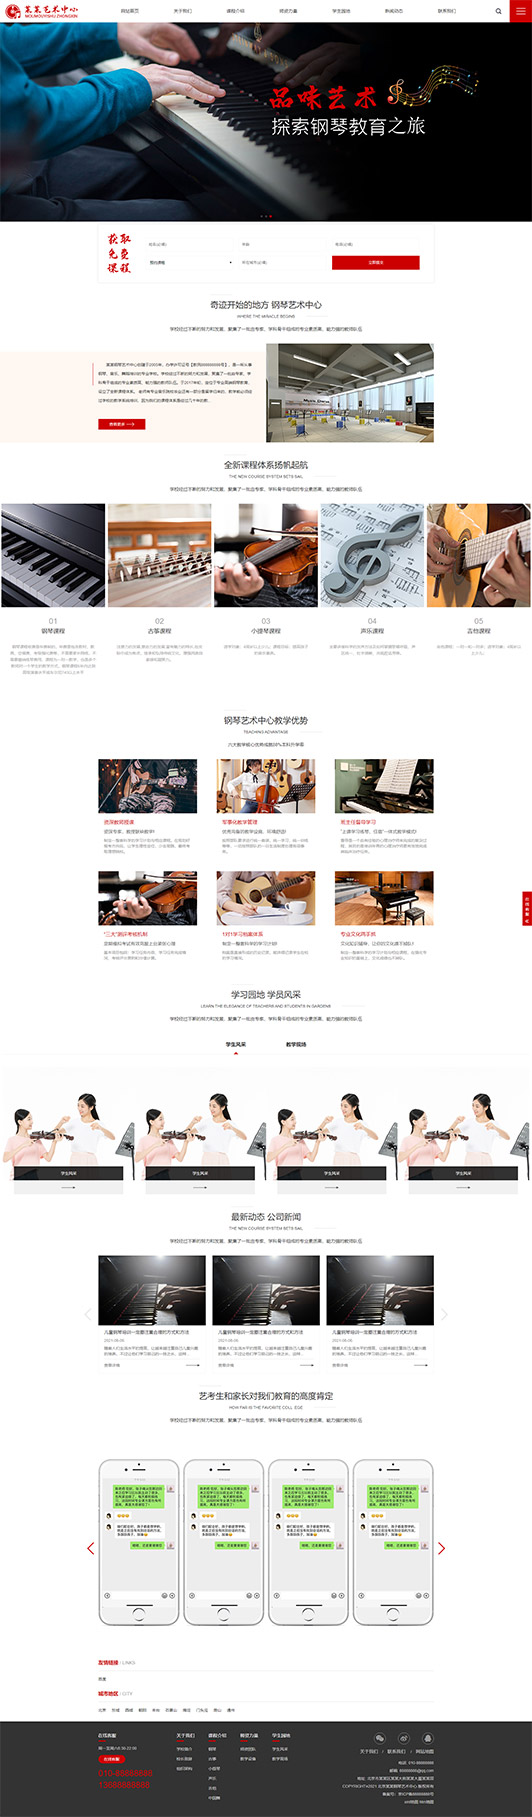 三明钢琴艺术培训公司响应式企业网站